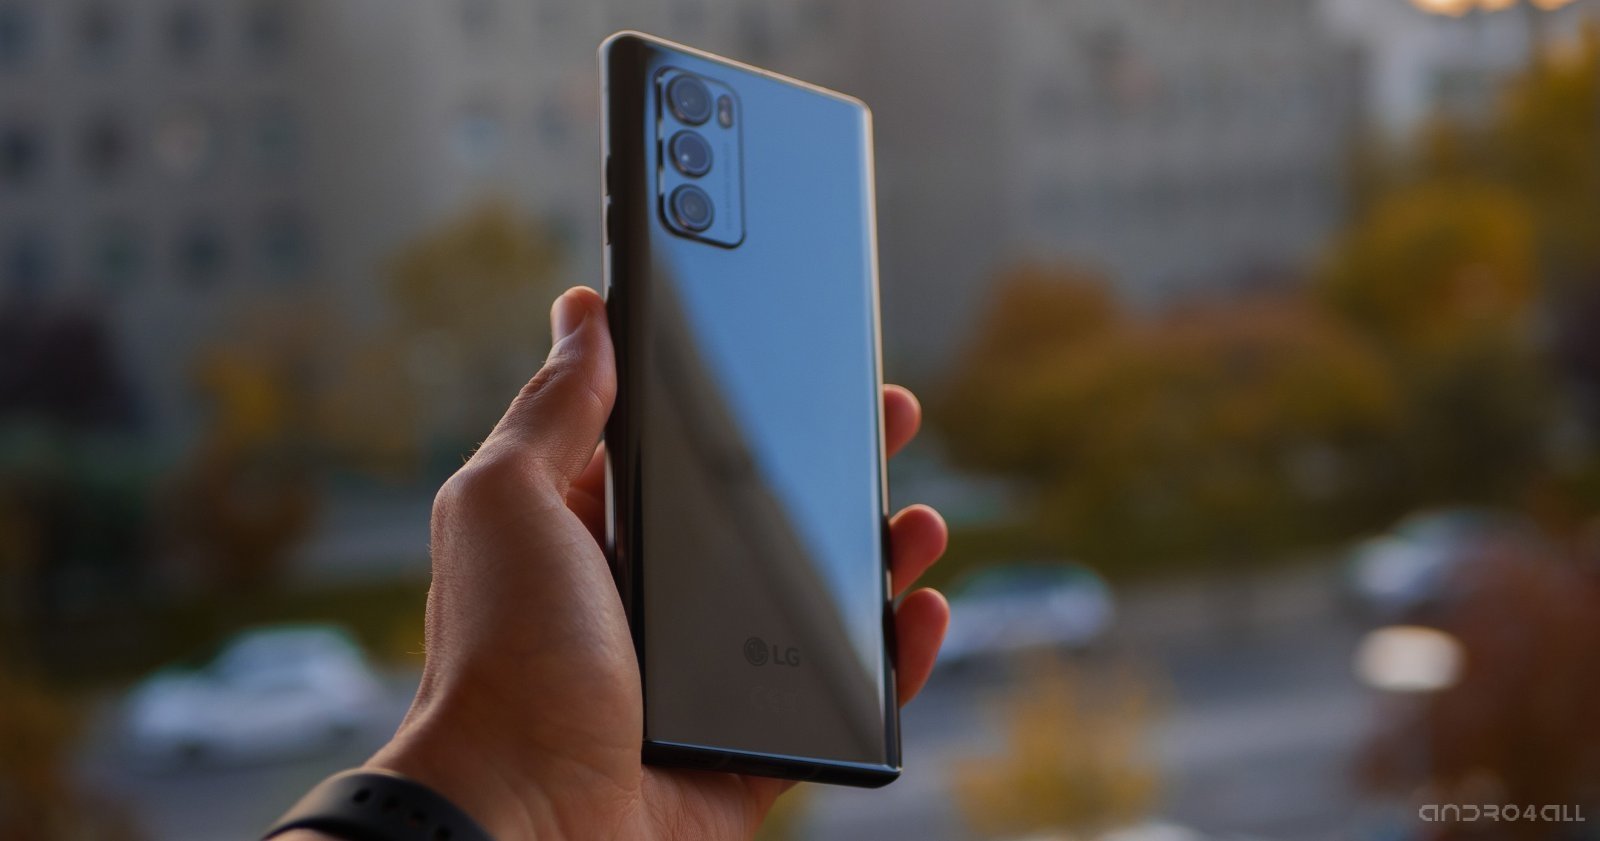 Comprar un móvil LG en 2021: ¿qué modelos merecen la pena?